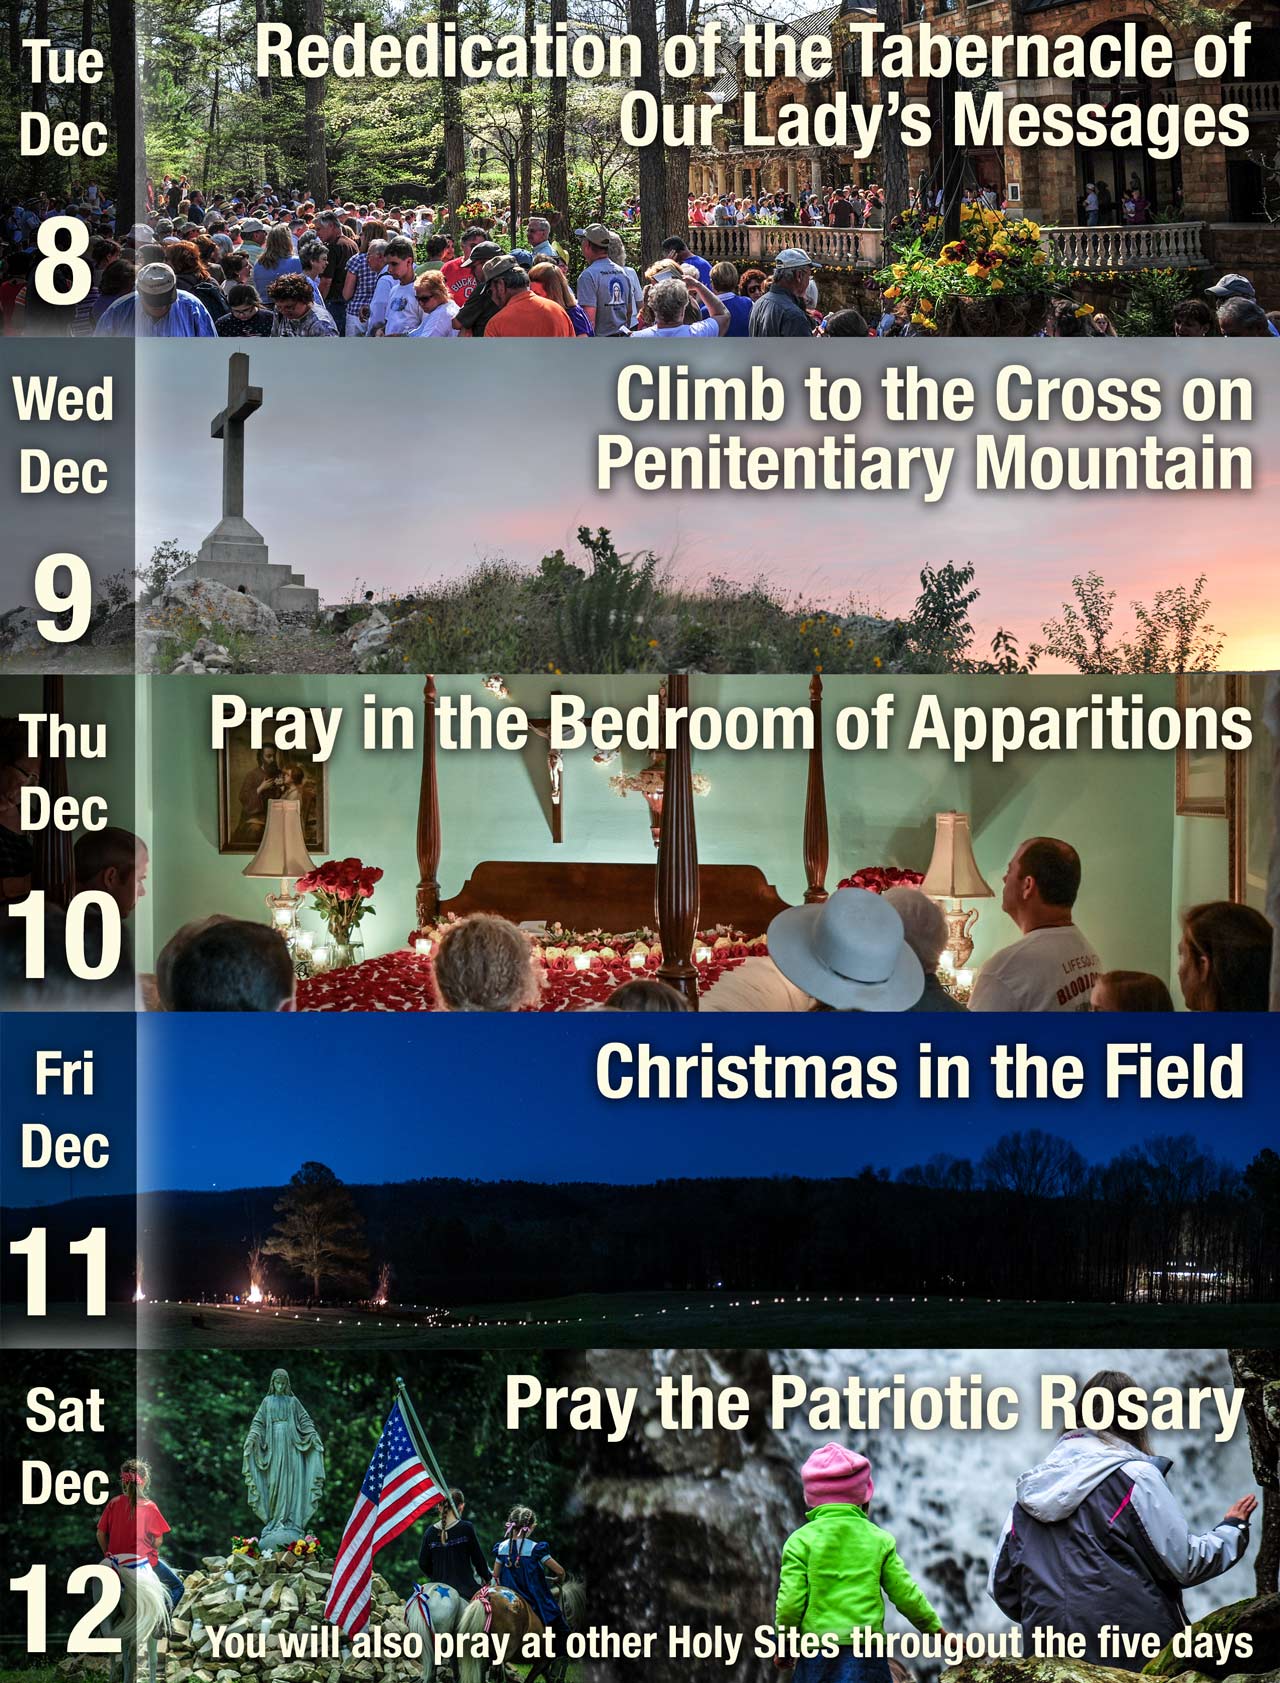 December 8-12, 2020 at Caritas of Birmingham